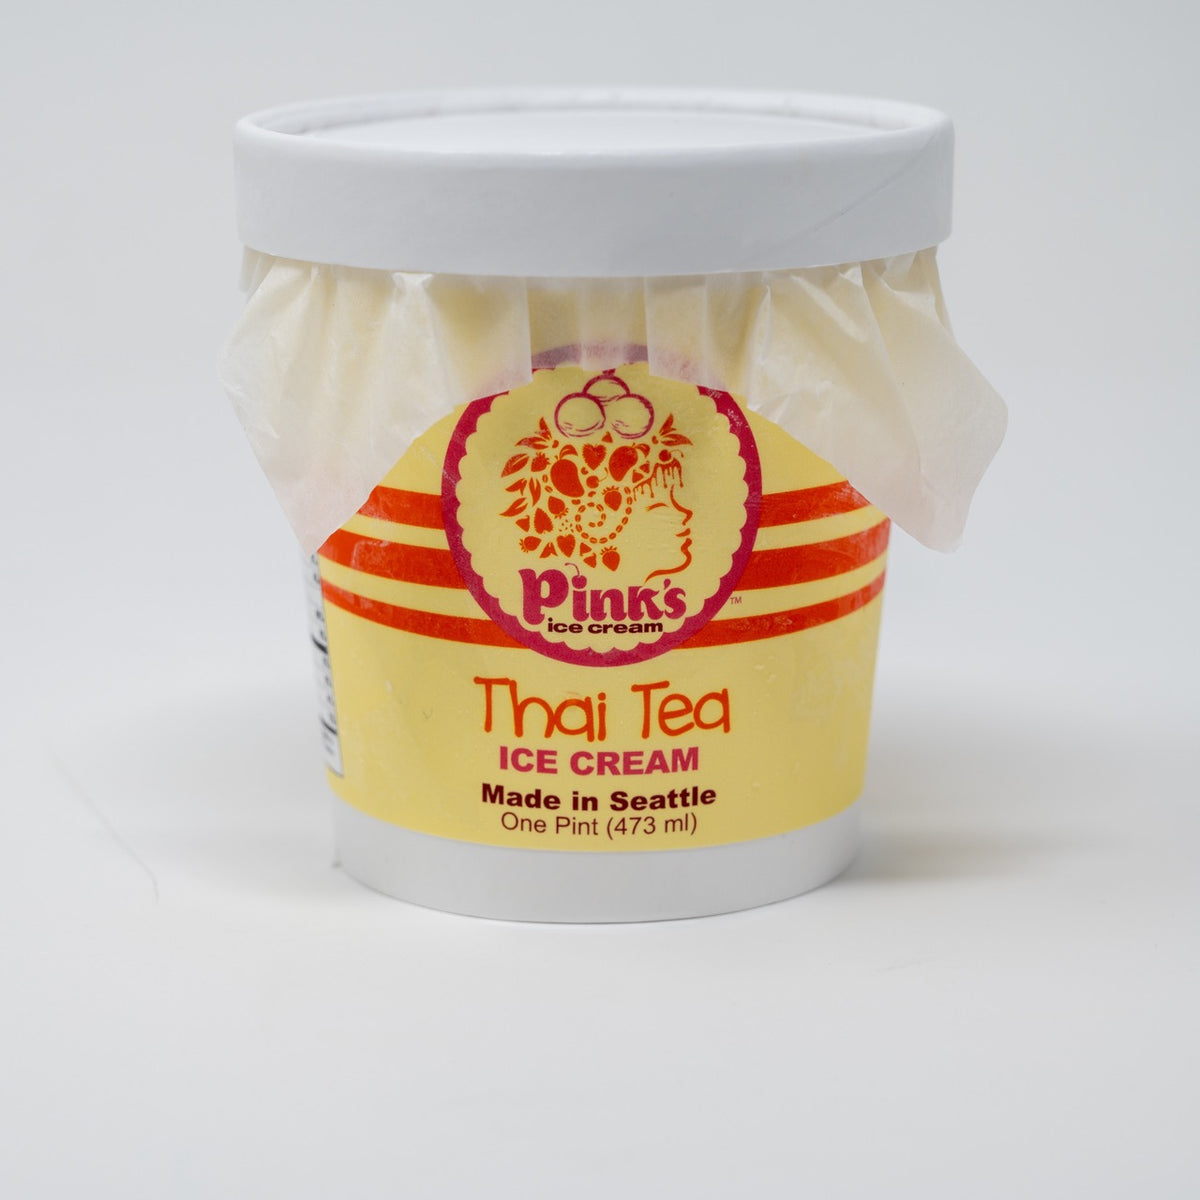 Thai Tea Ice Cream